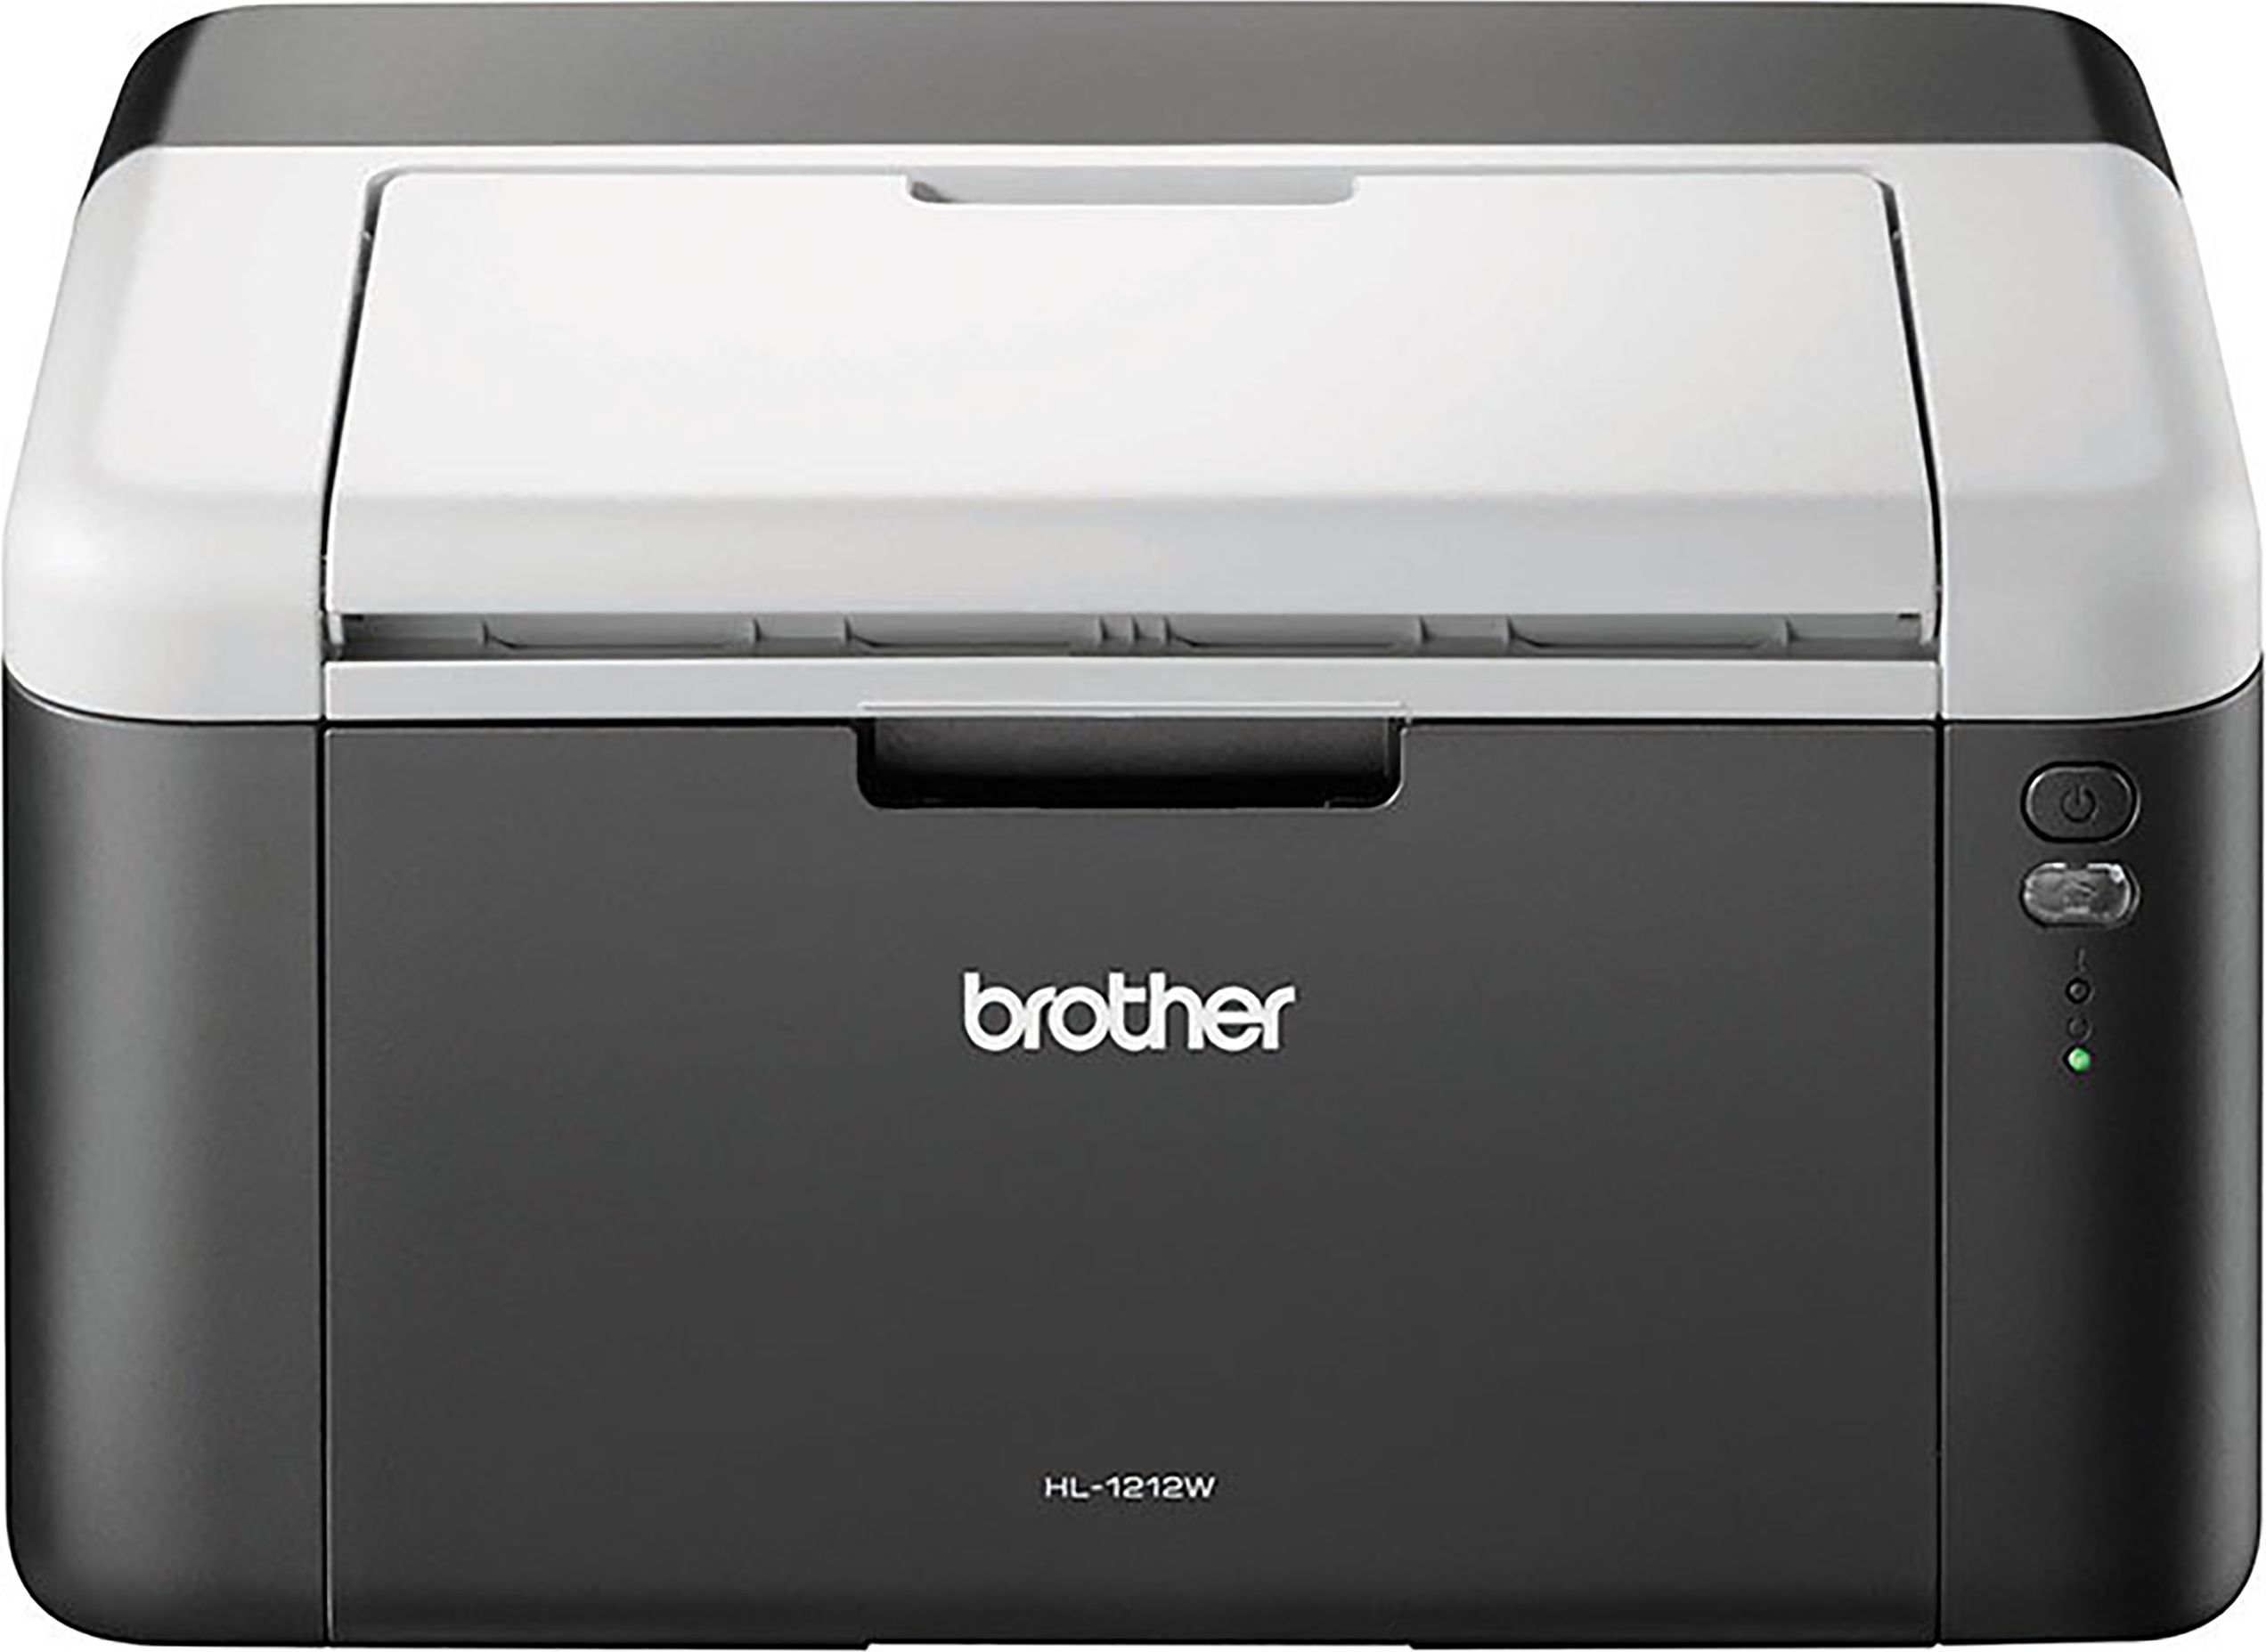 Brother HL1212WVBZU1 Laser Printer - Black